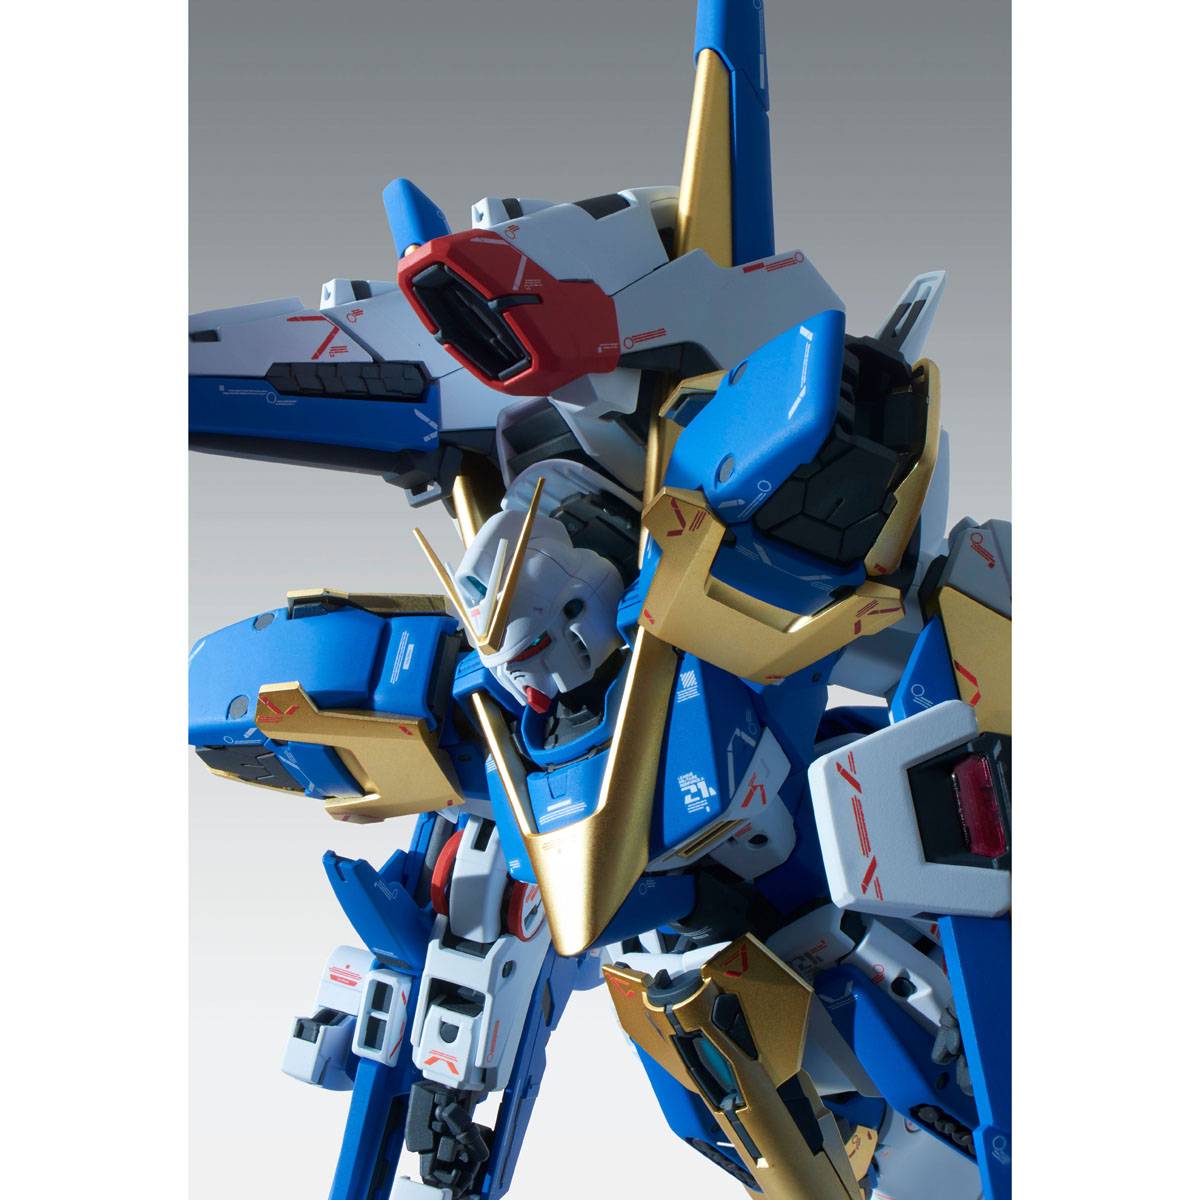 KA Kit 4573102555281 for sale online Premium Bandai MG 1/100 V2 Assault Buster Gundam Ver